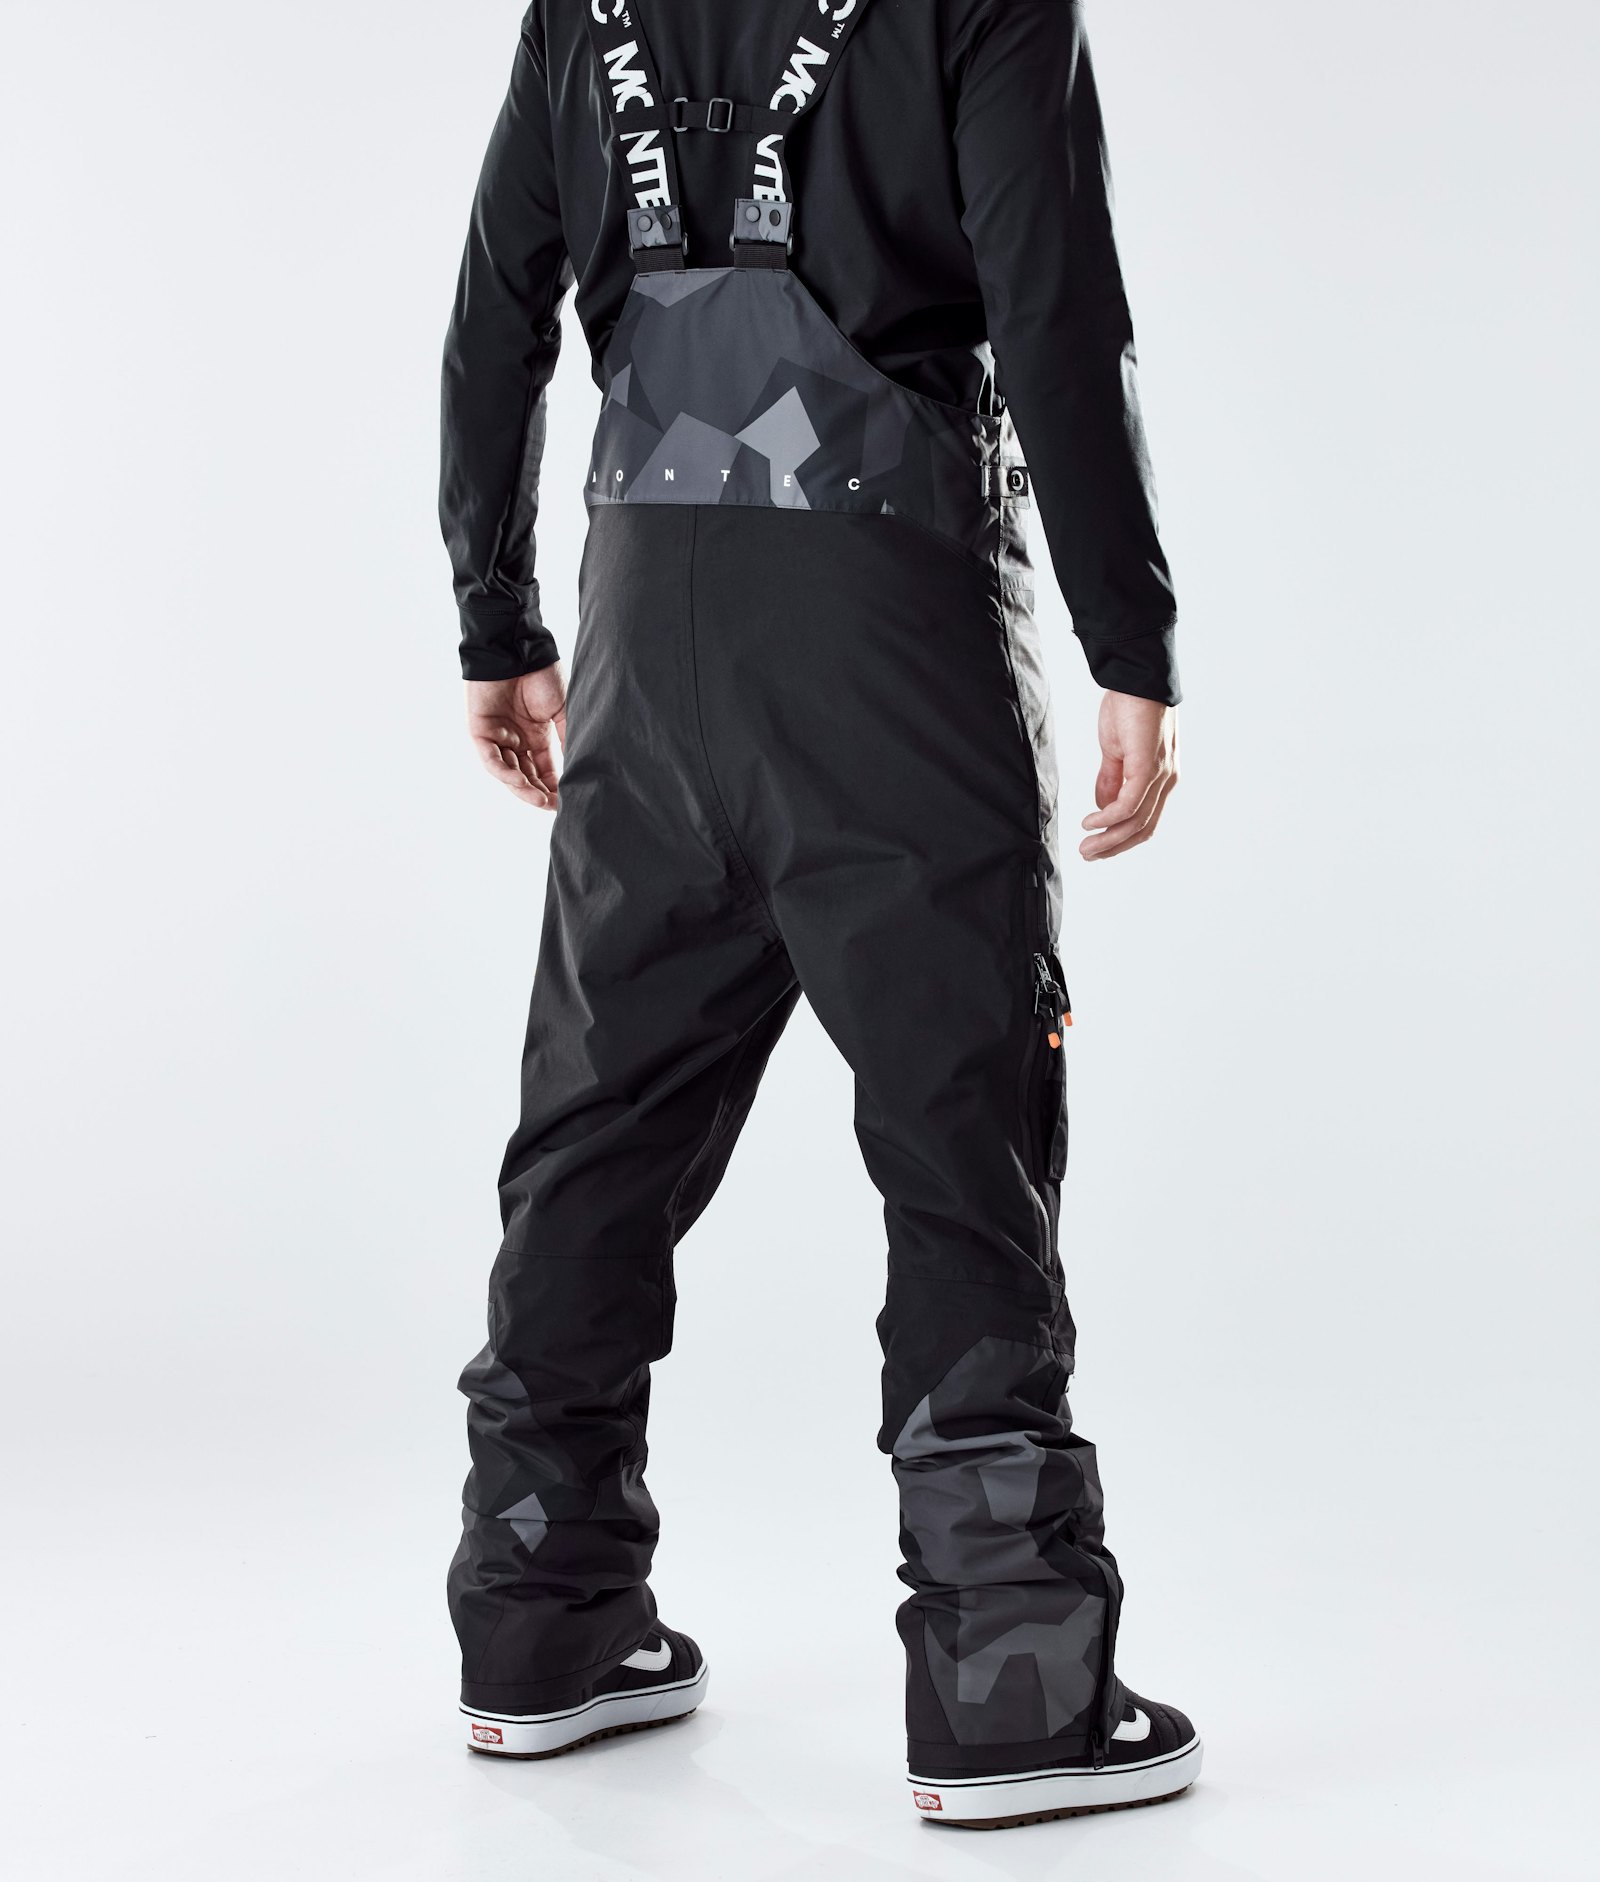 Fawk 2020 Kalhoty na Snowboard Pánské Night Camo/Black